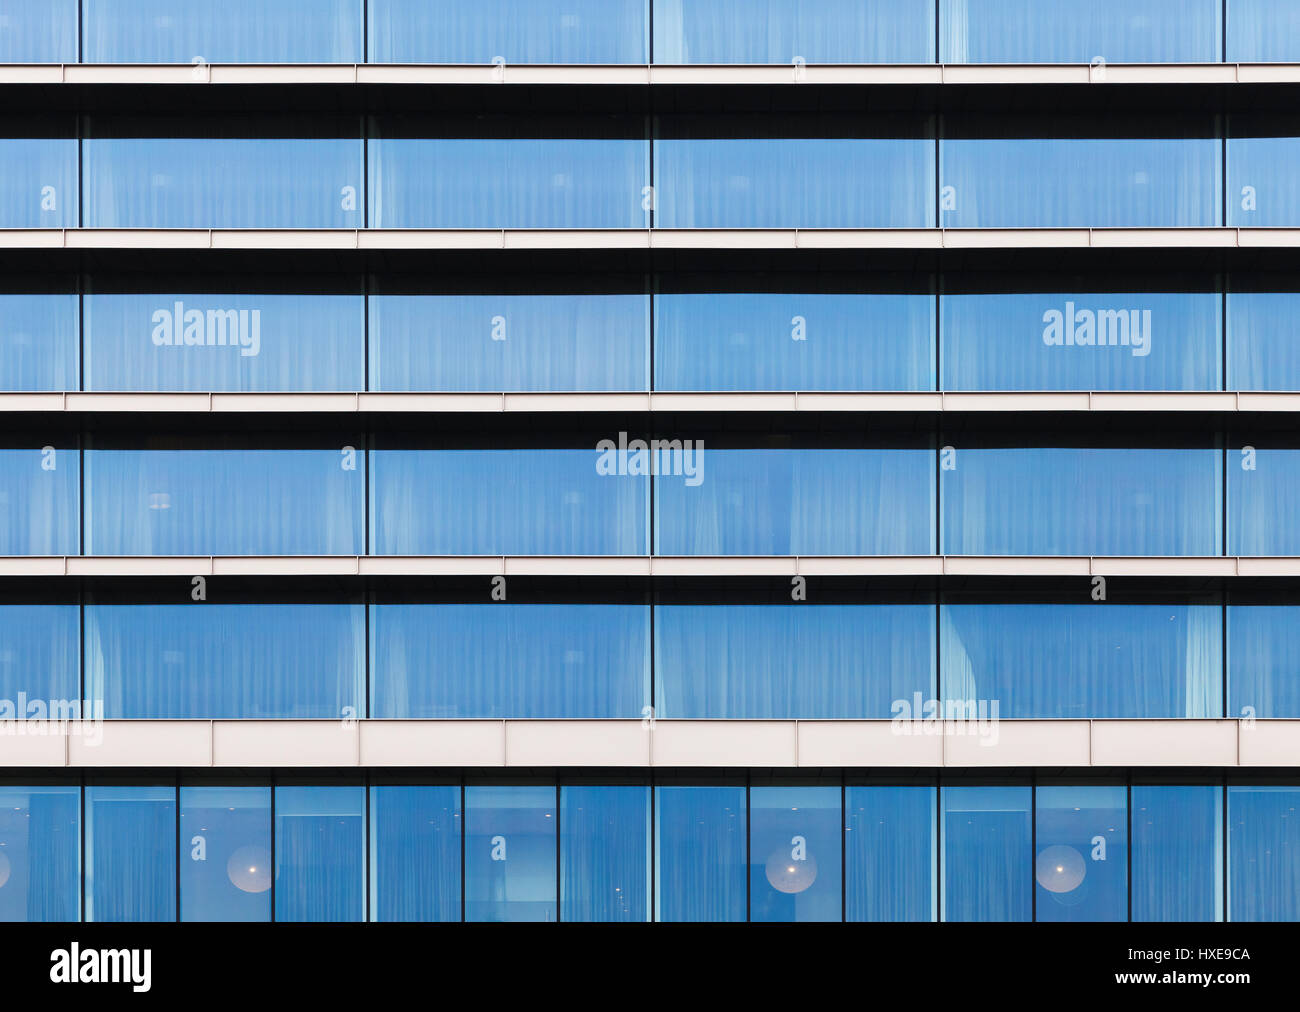 Modernes Gebäude Fassade, Wand gemacht von blauem Glas, Stahlrahmen und Betonböden, Vorderansicht, flache Hintergrundtextur Foto Stockfoto